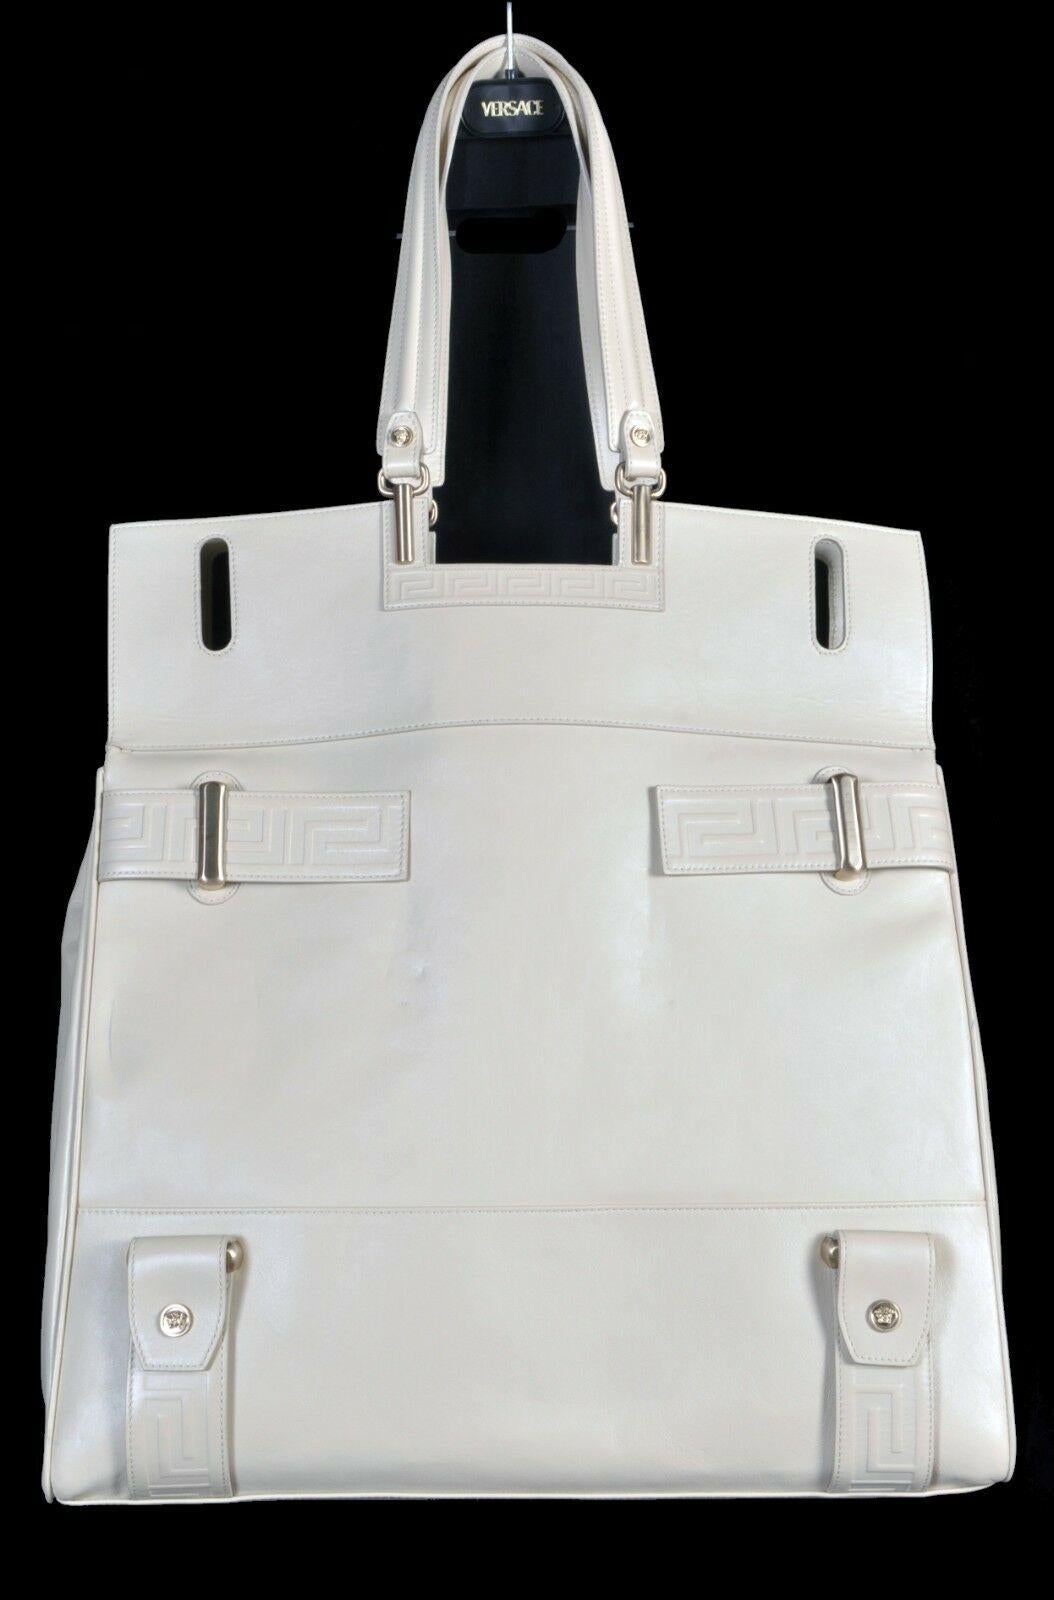 S/S 2012 Look # 15 New VERSACE Men's Travel Leather Handbag 1